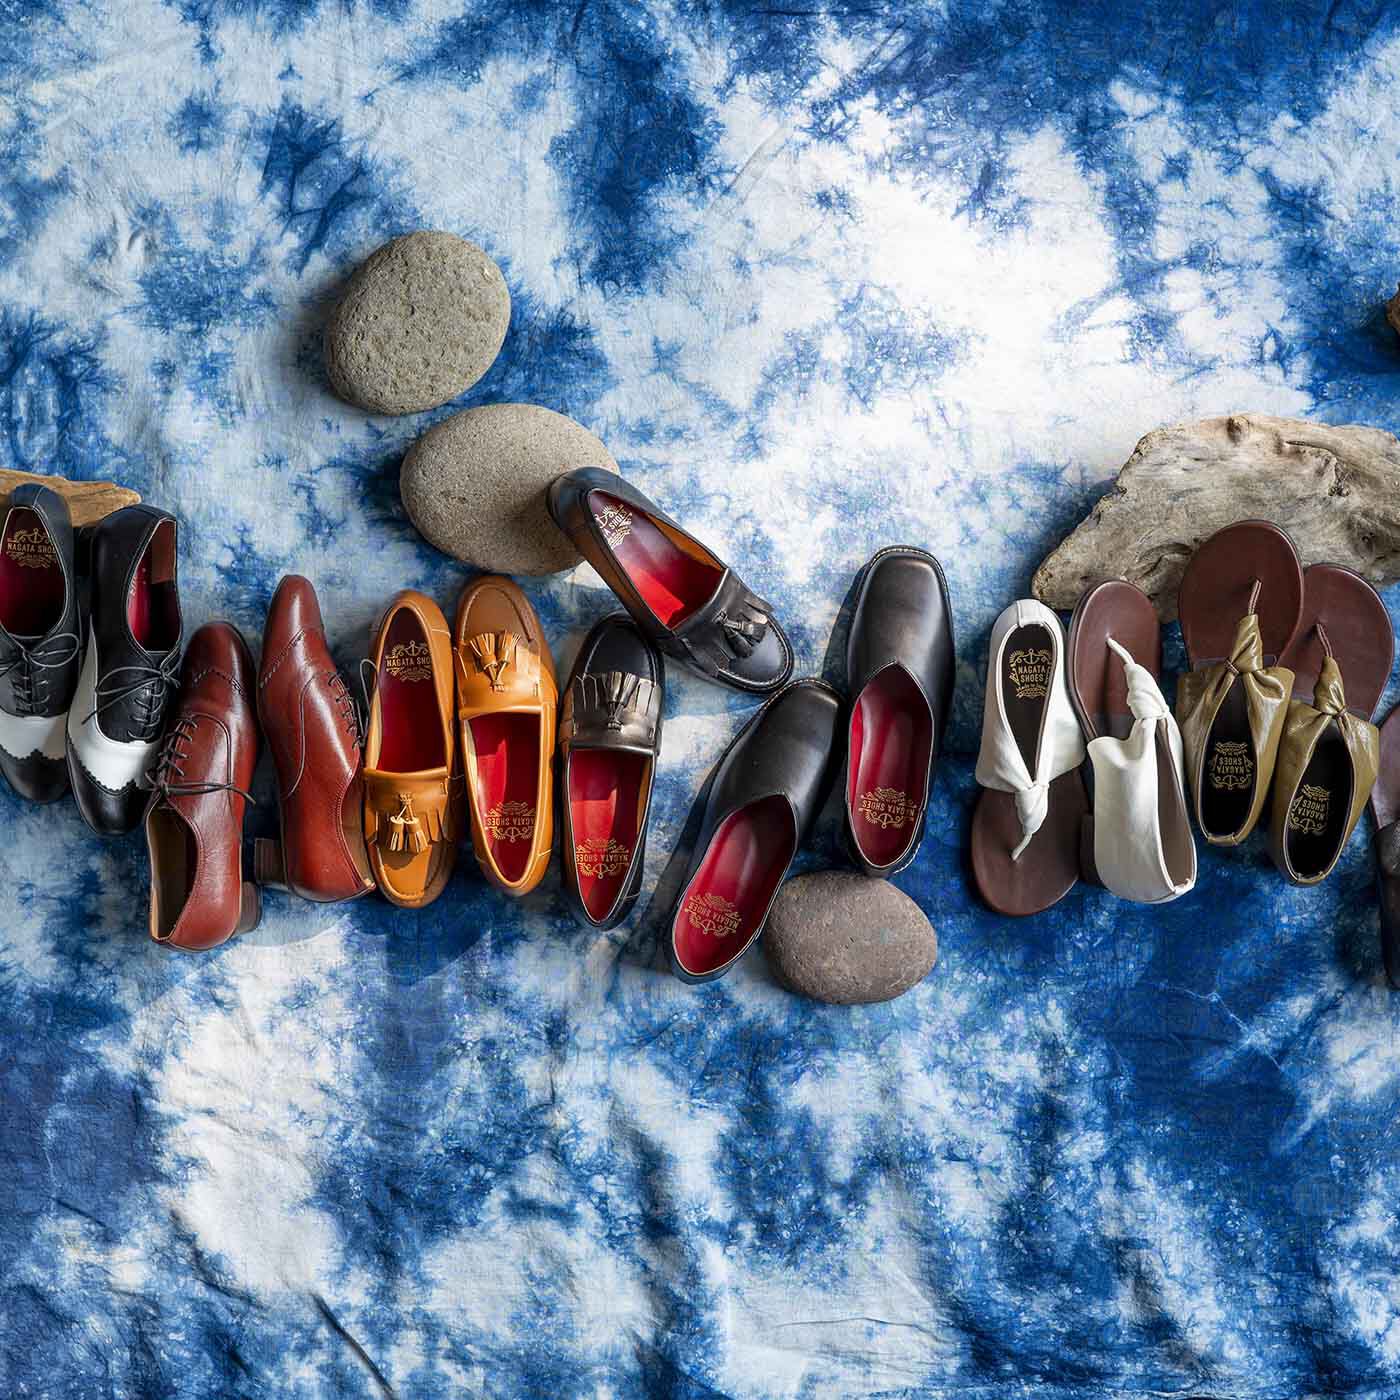 ＆Stories|長田の靴メーカーと作った　職人本革のレースアップシューズ〈レッドブラウン〉|夏の装いにぴったりな長田の職人が手掛けた革靴たち。あなたに相応しいデザインを見つけてみて。